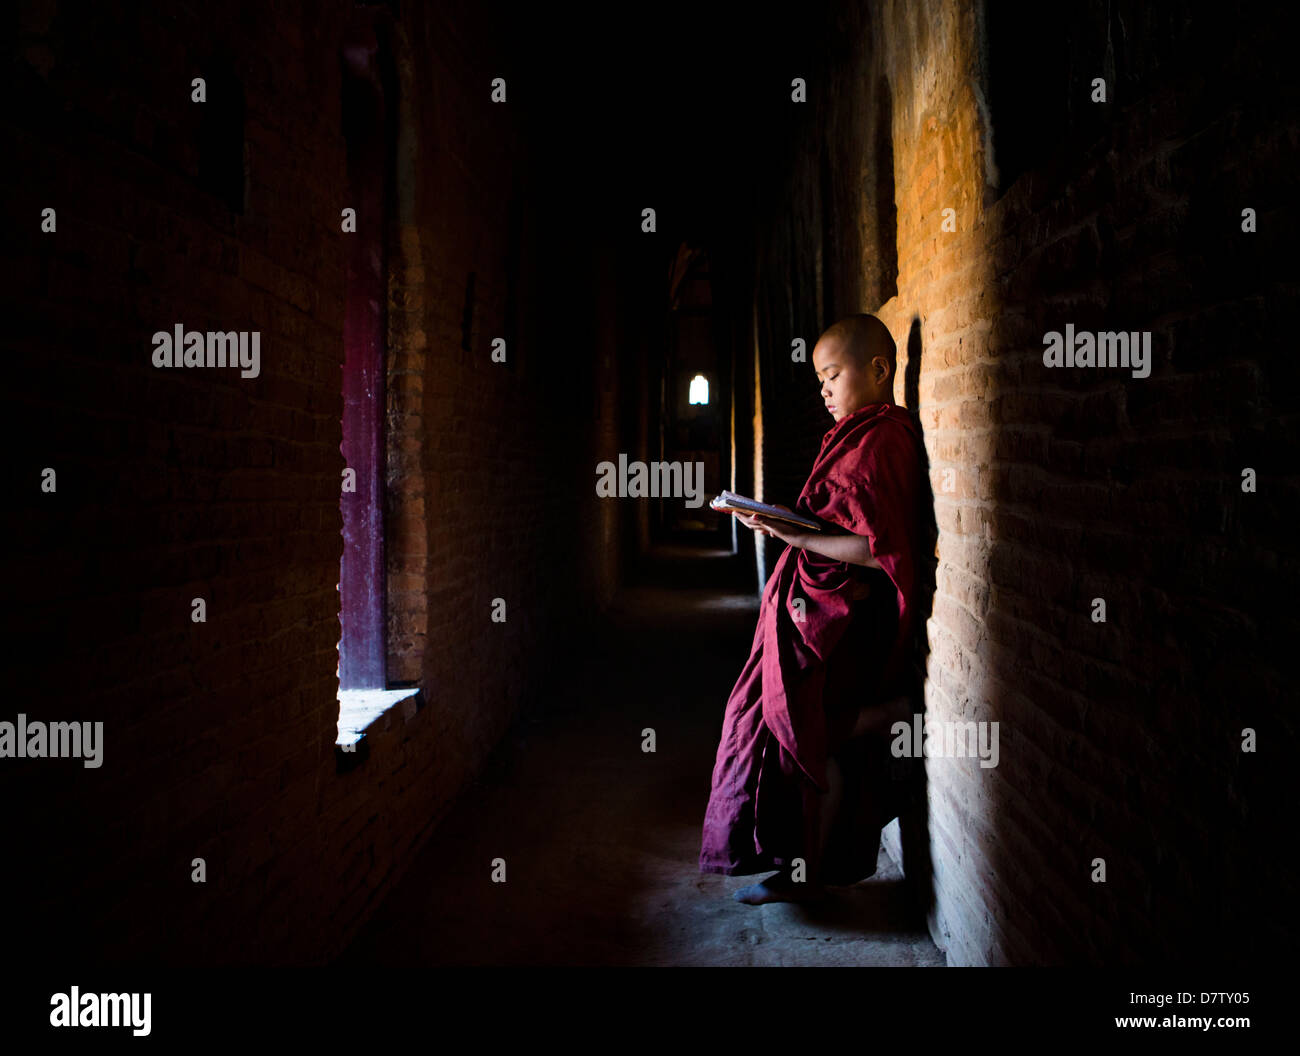 Moine Bouddhiste Novice écritures bouddhistes de lecture à la lumière d'une fenêtre dans l'un des nombreux temples de Bagan, Birmanie Banque D'Images